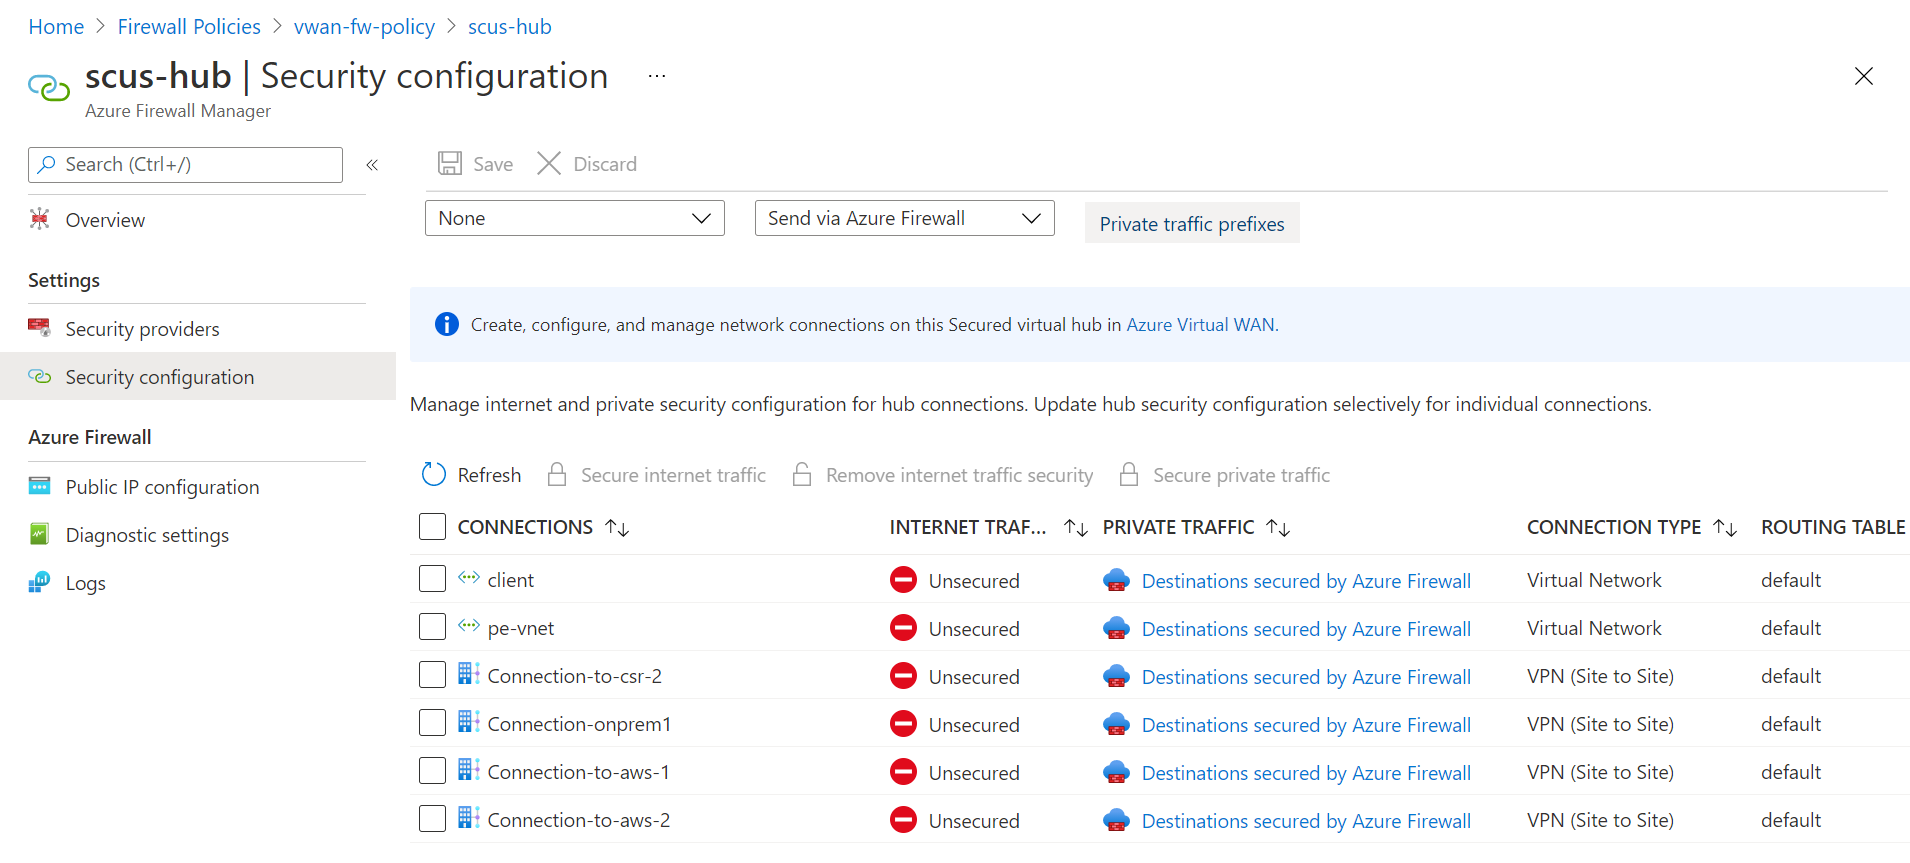 Tráfico privado protegido por Azure Firewall